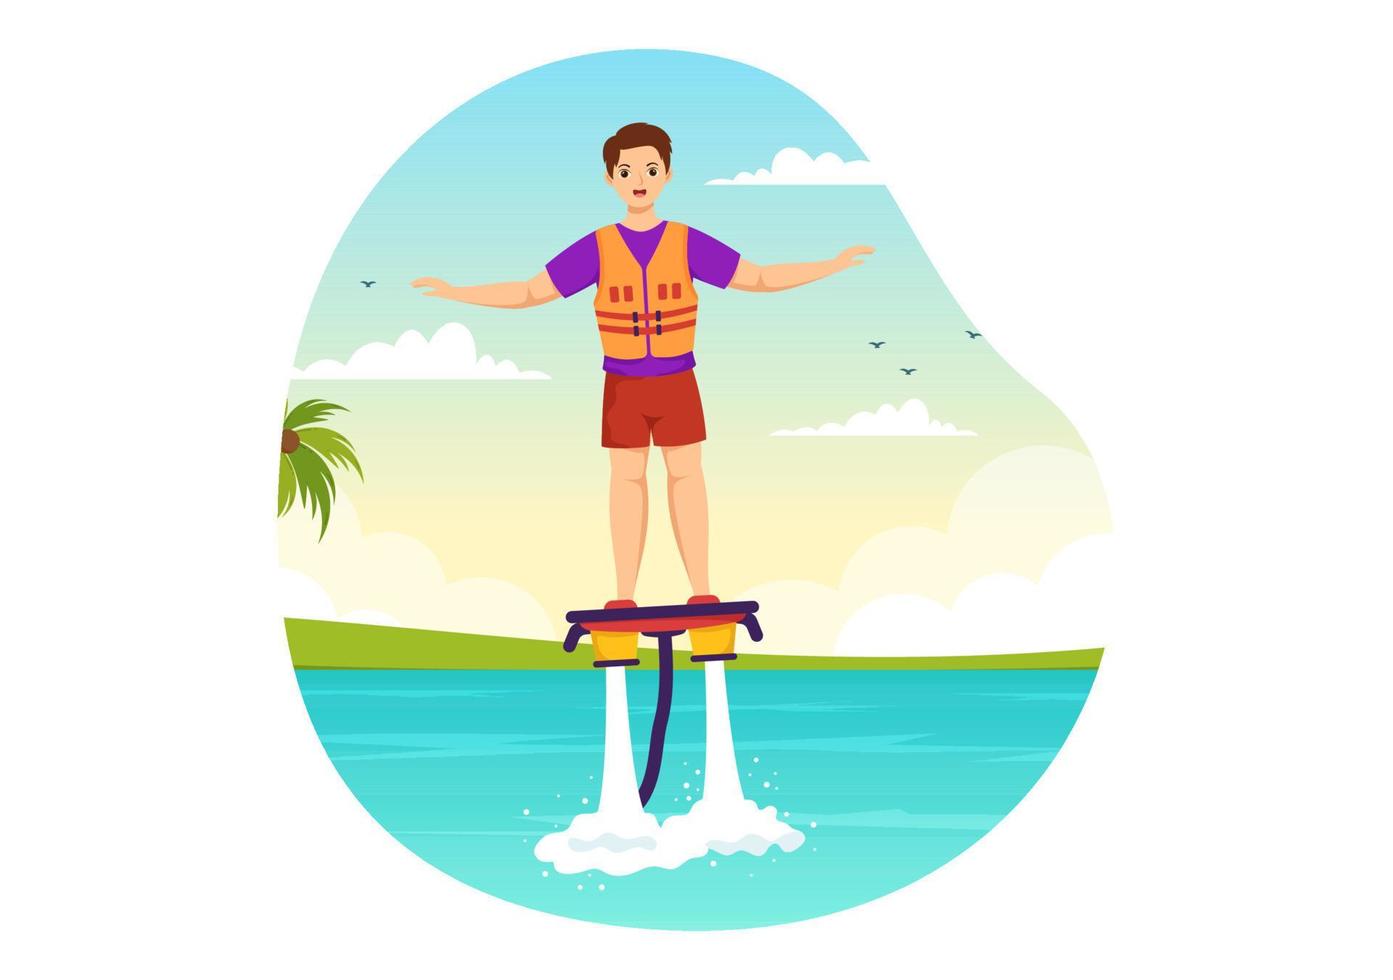 flyboard-illustration mit menschen, die jet pack in sommerstrandferien in handgezeichneten vorlagen der flachen extremen wassersportaktivitätskarikatur reiten vektor